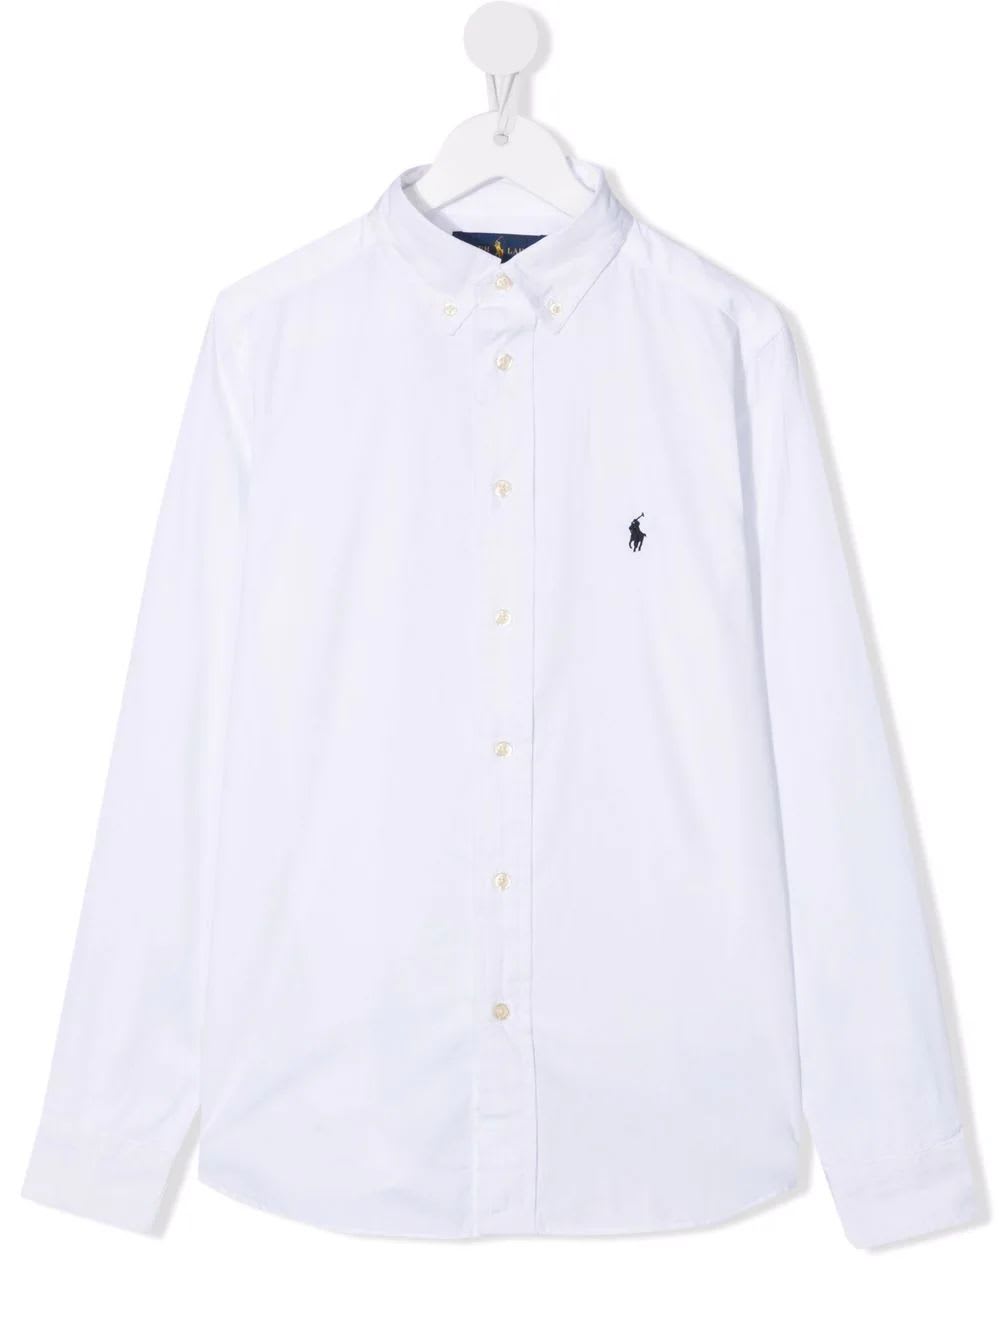 Ralph Lauren Boys Oxford Shirt In White Slim-fit Cotton